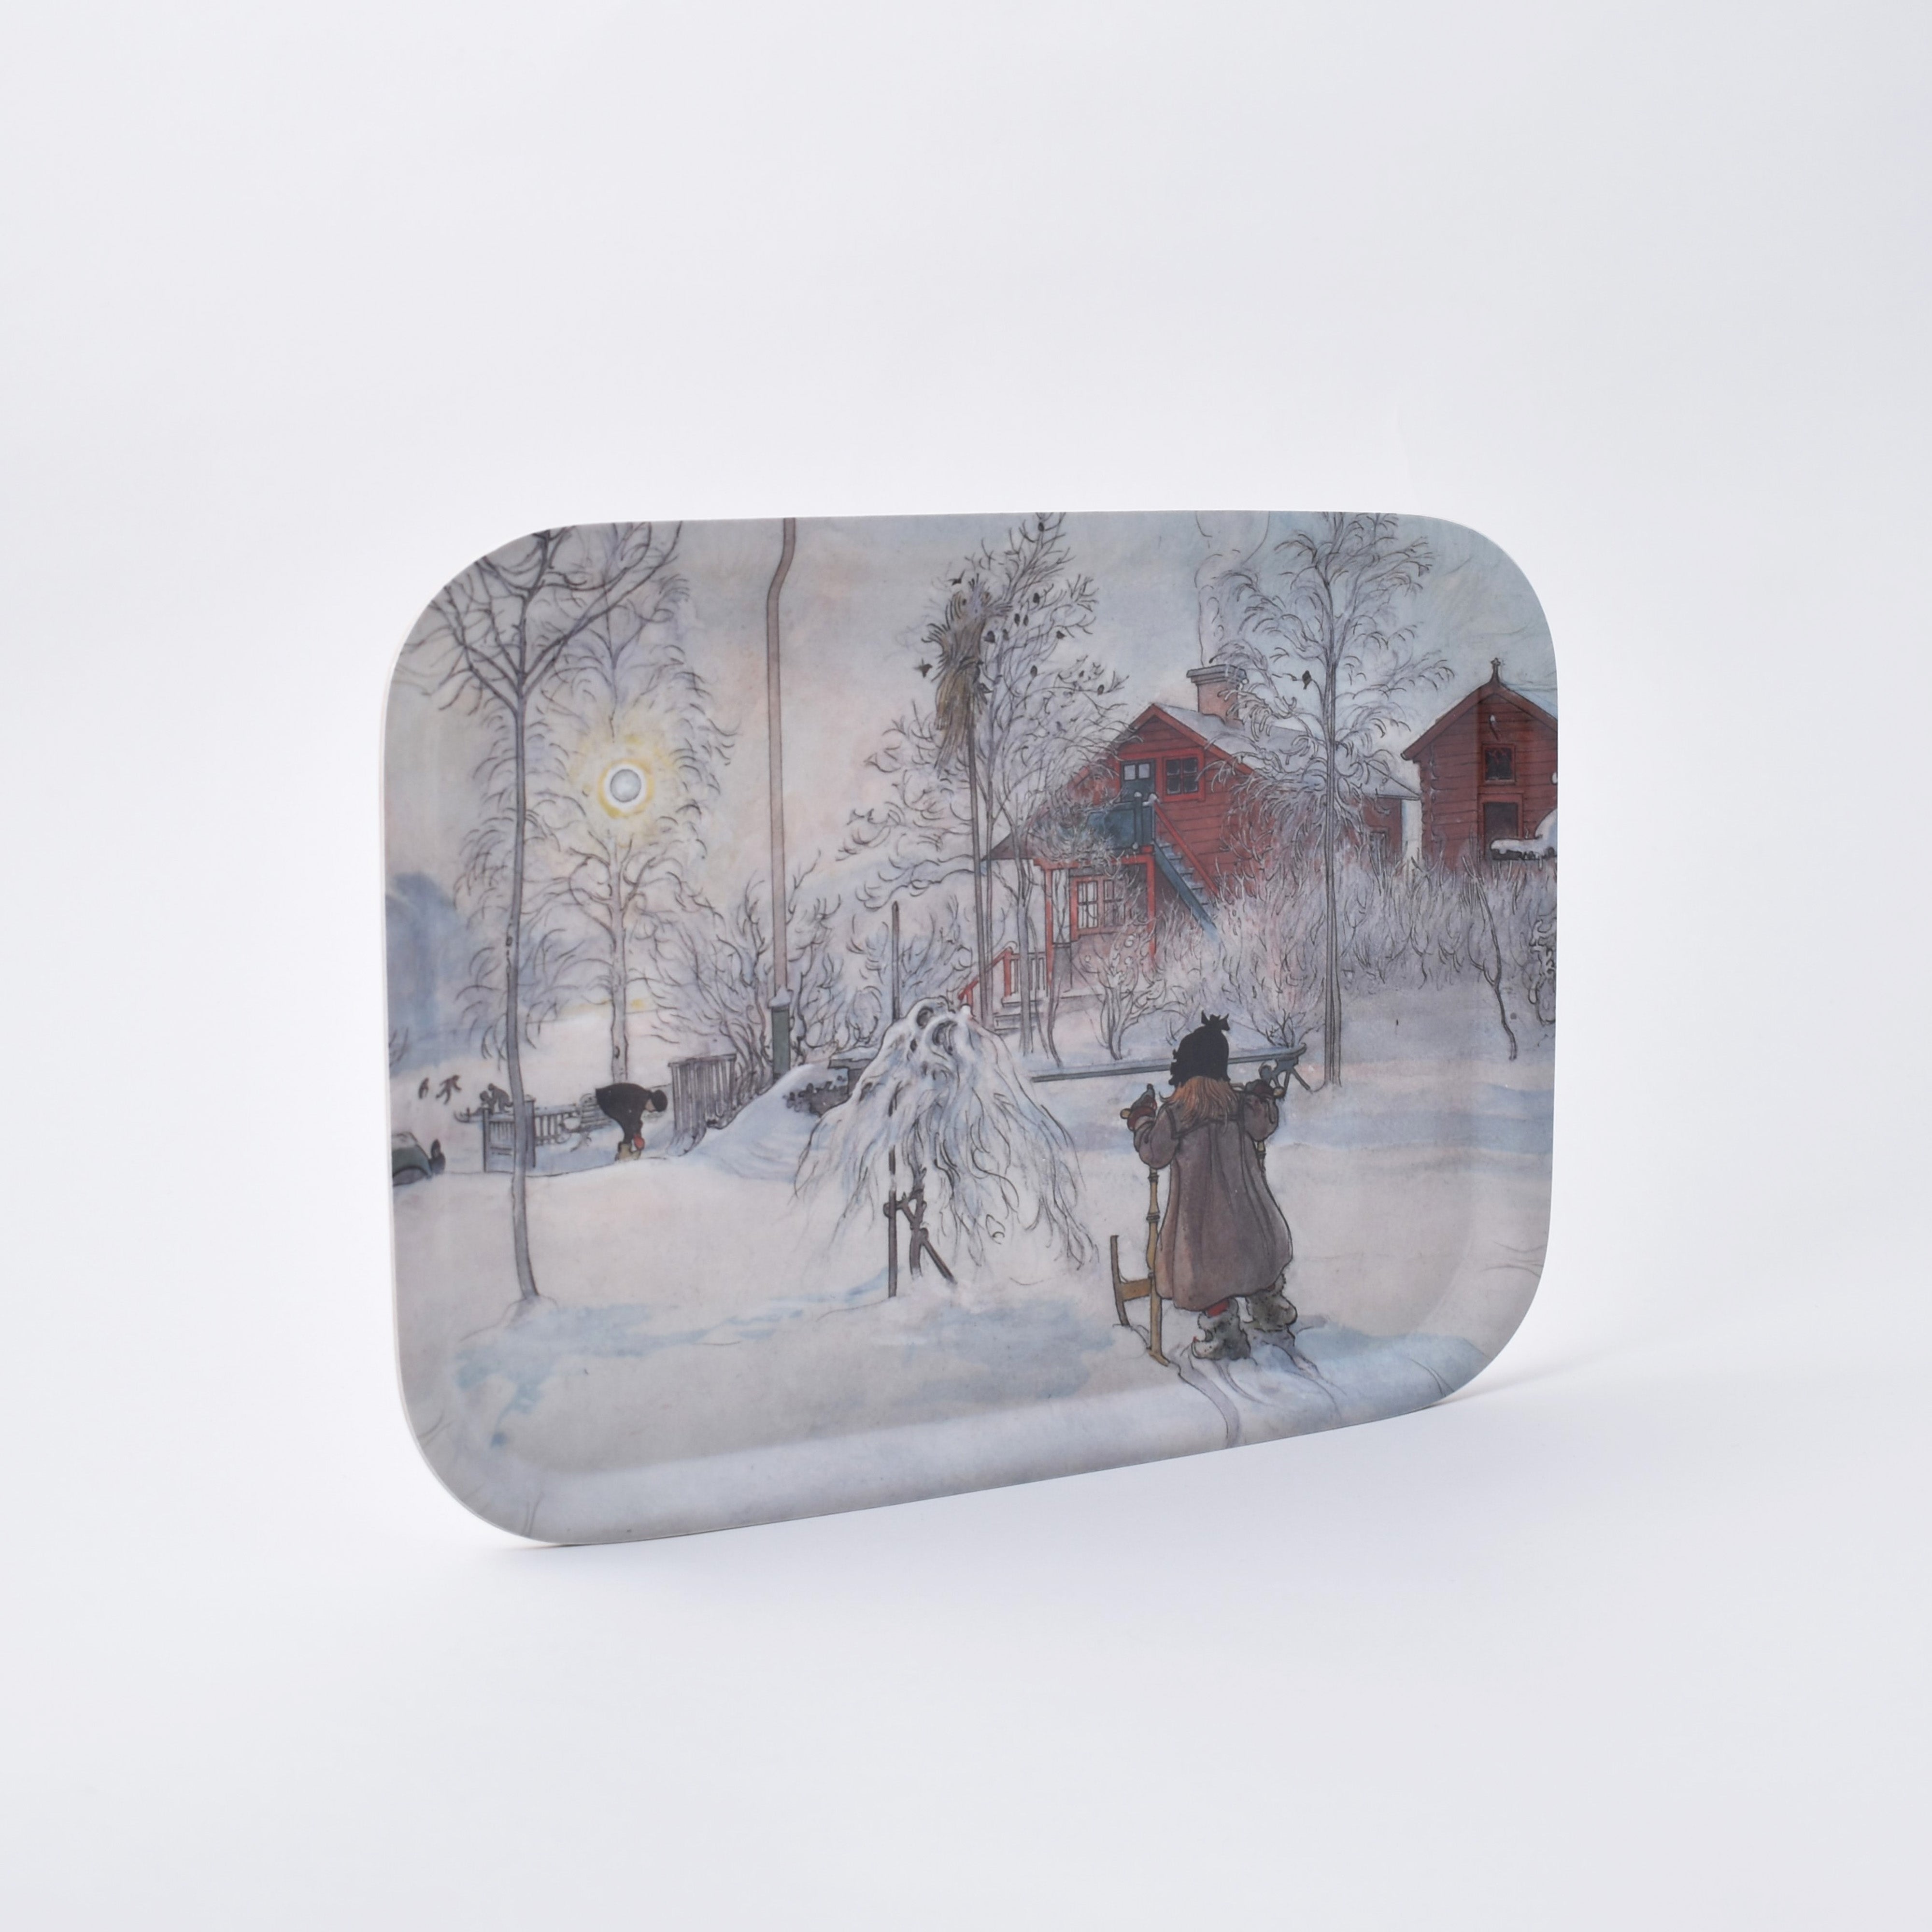 Bricka med vintermotiv av Carl Larsson från Nationalmuseum